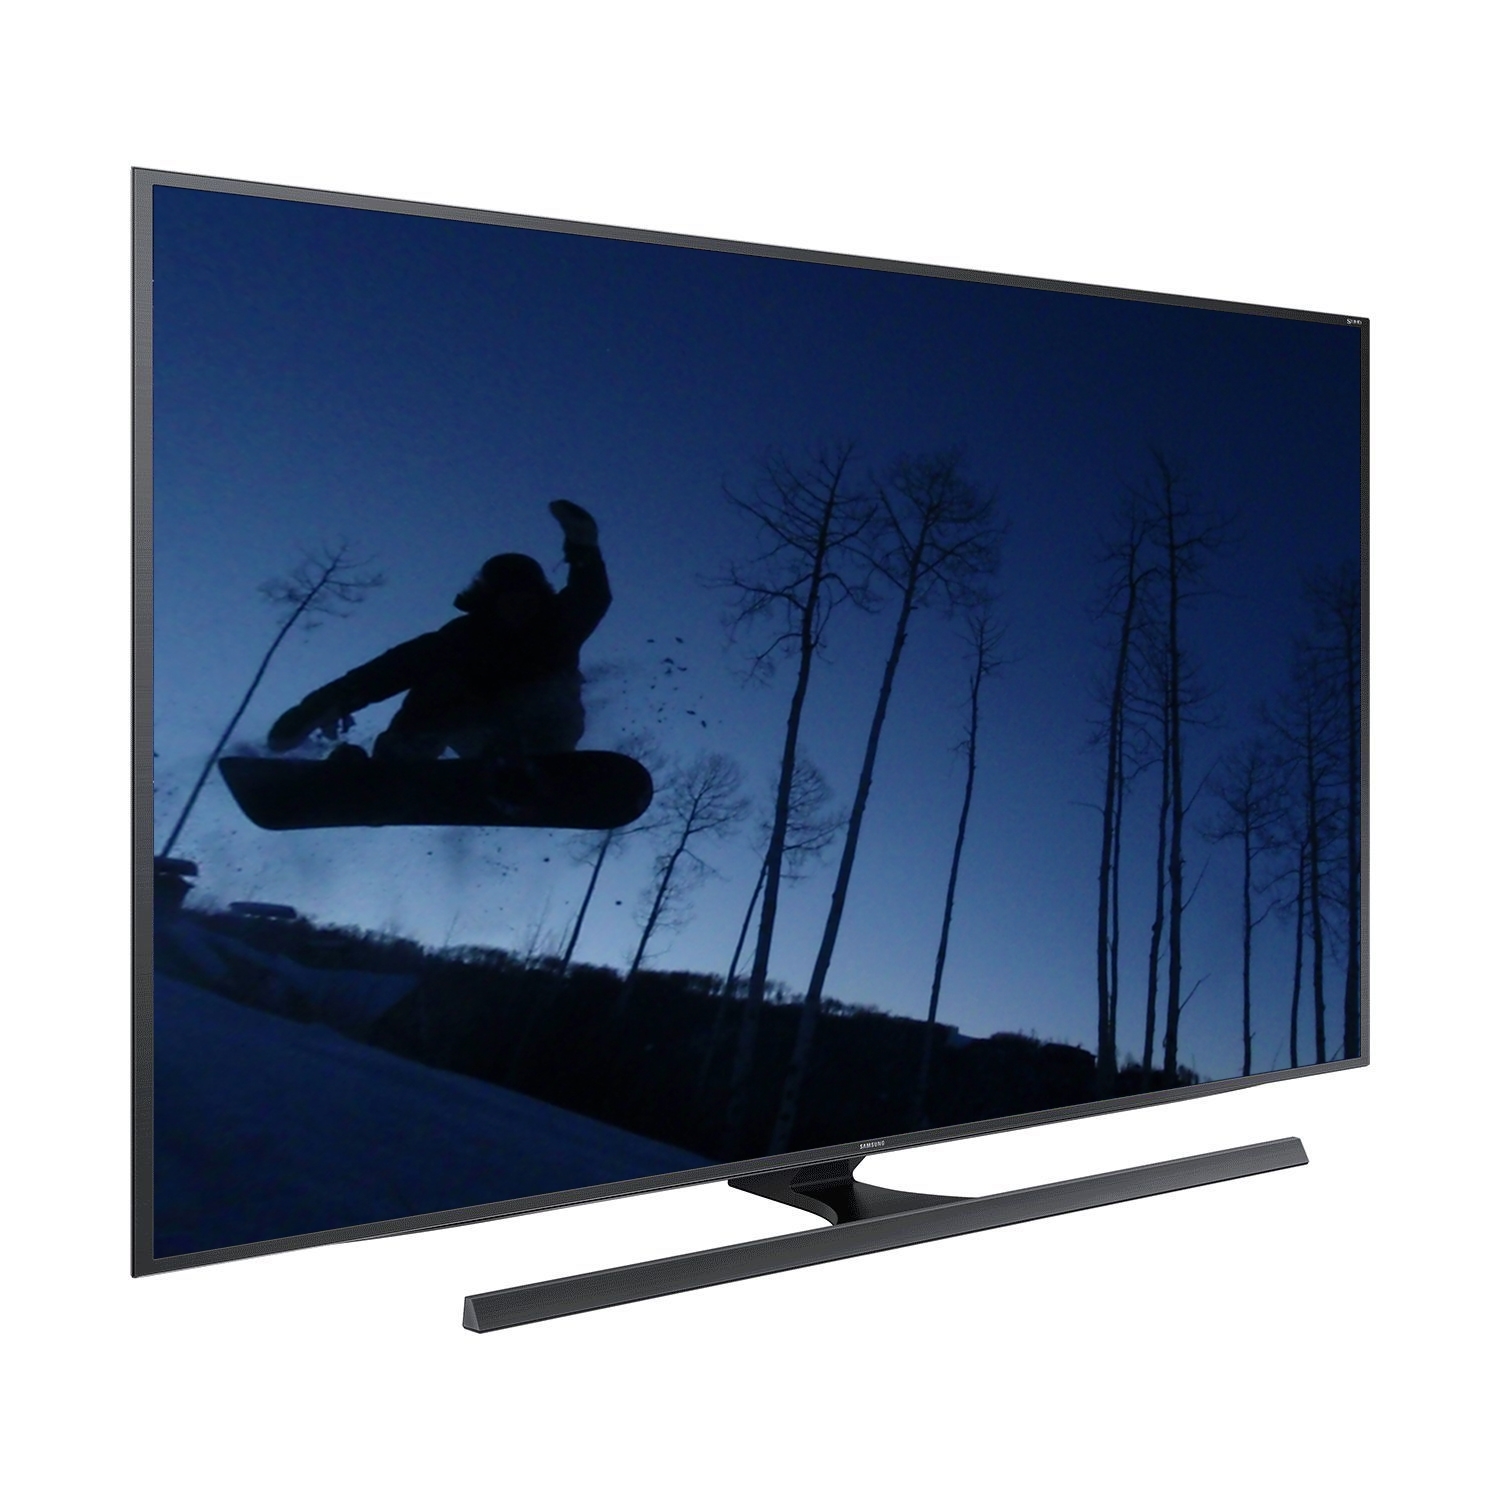 Samsung UN55JS850 4K 120Hz 55" Smart LED TV, Black (Certified Refurbished)